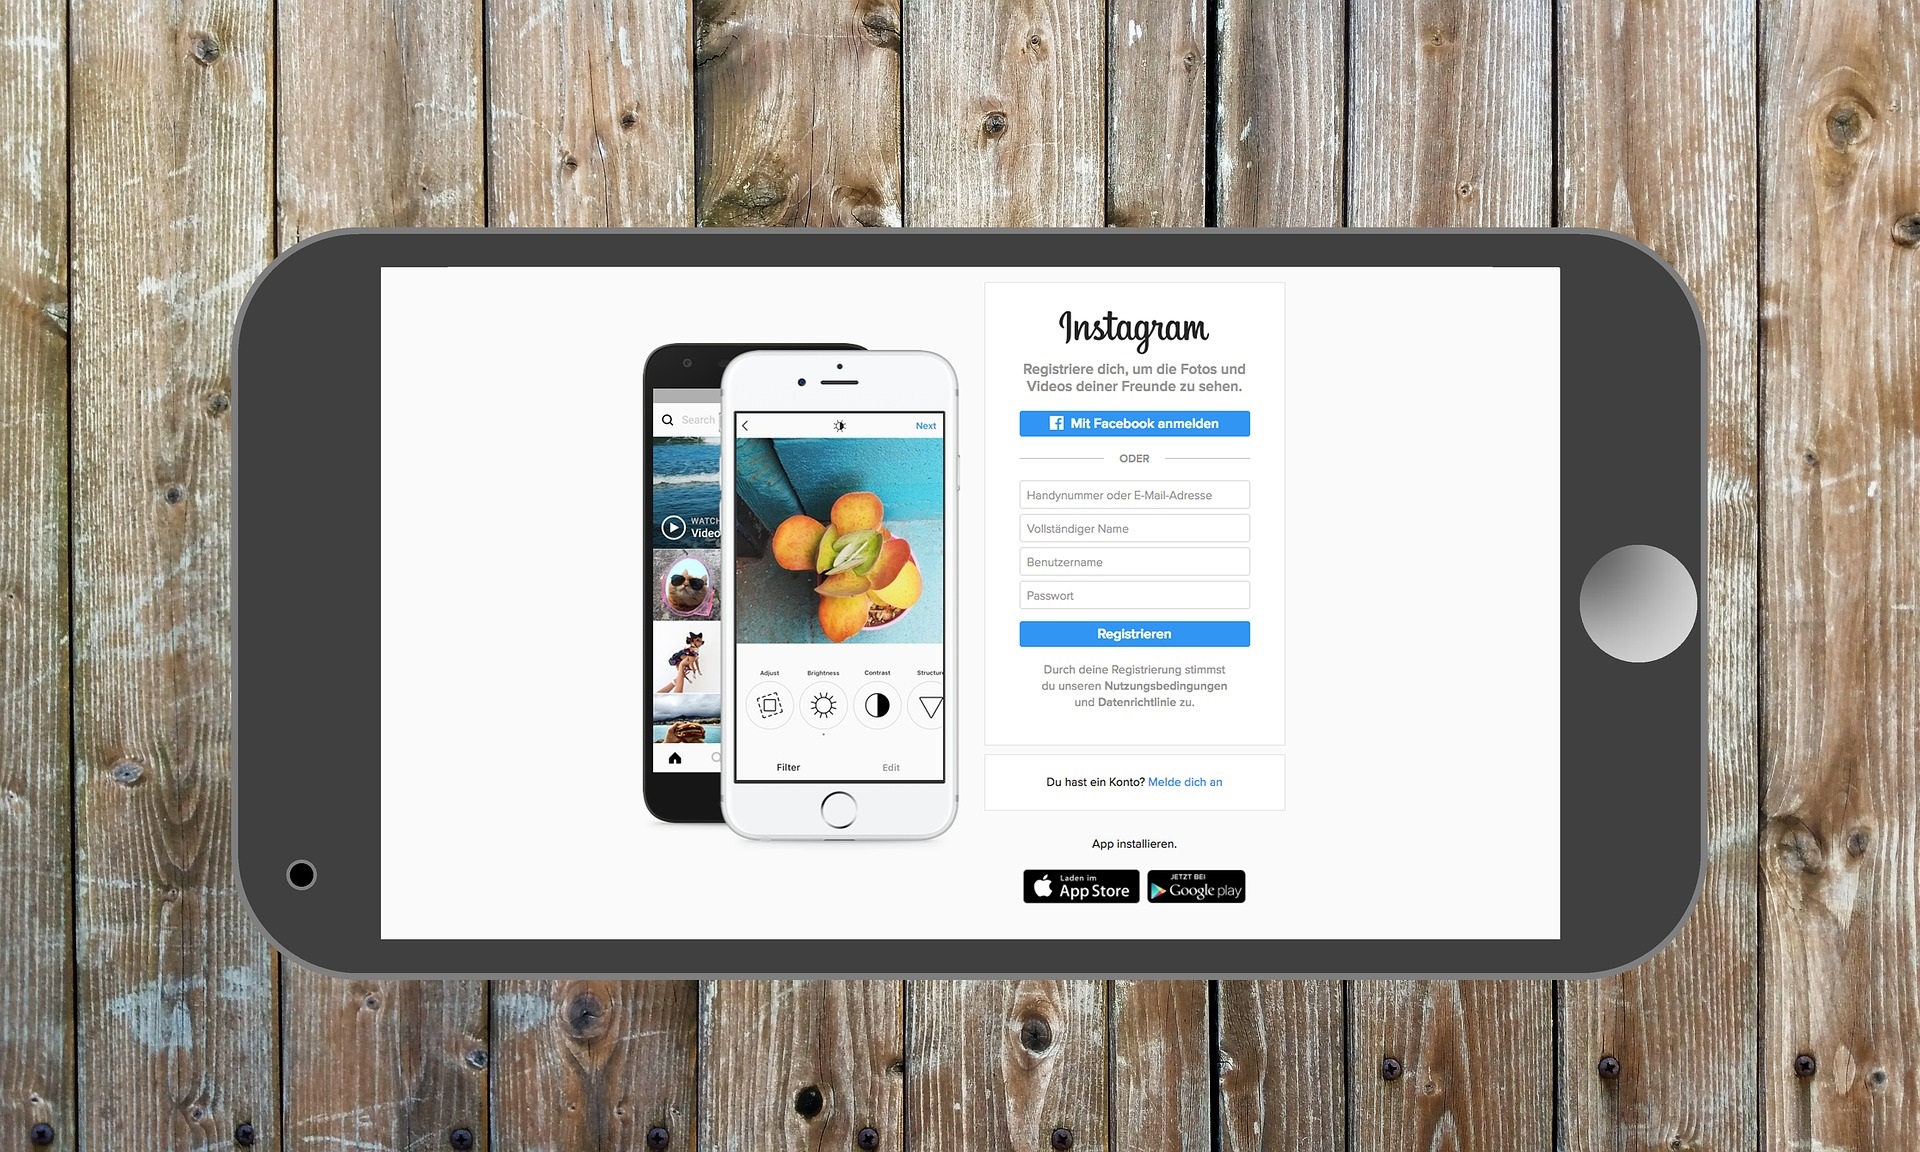 Instagram အတွက် စျေးကွက်ရှာဖွေရေး အကြံပြုချက်များ